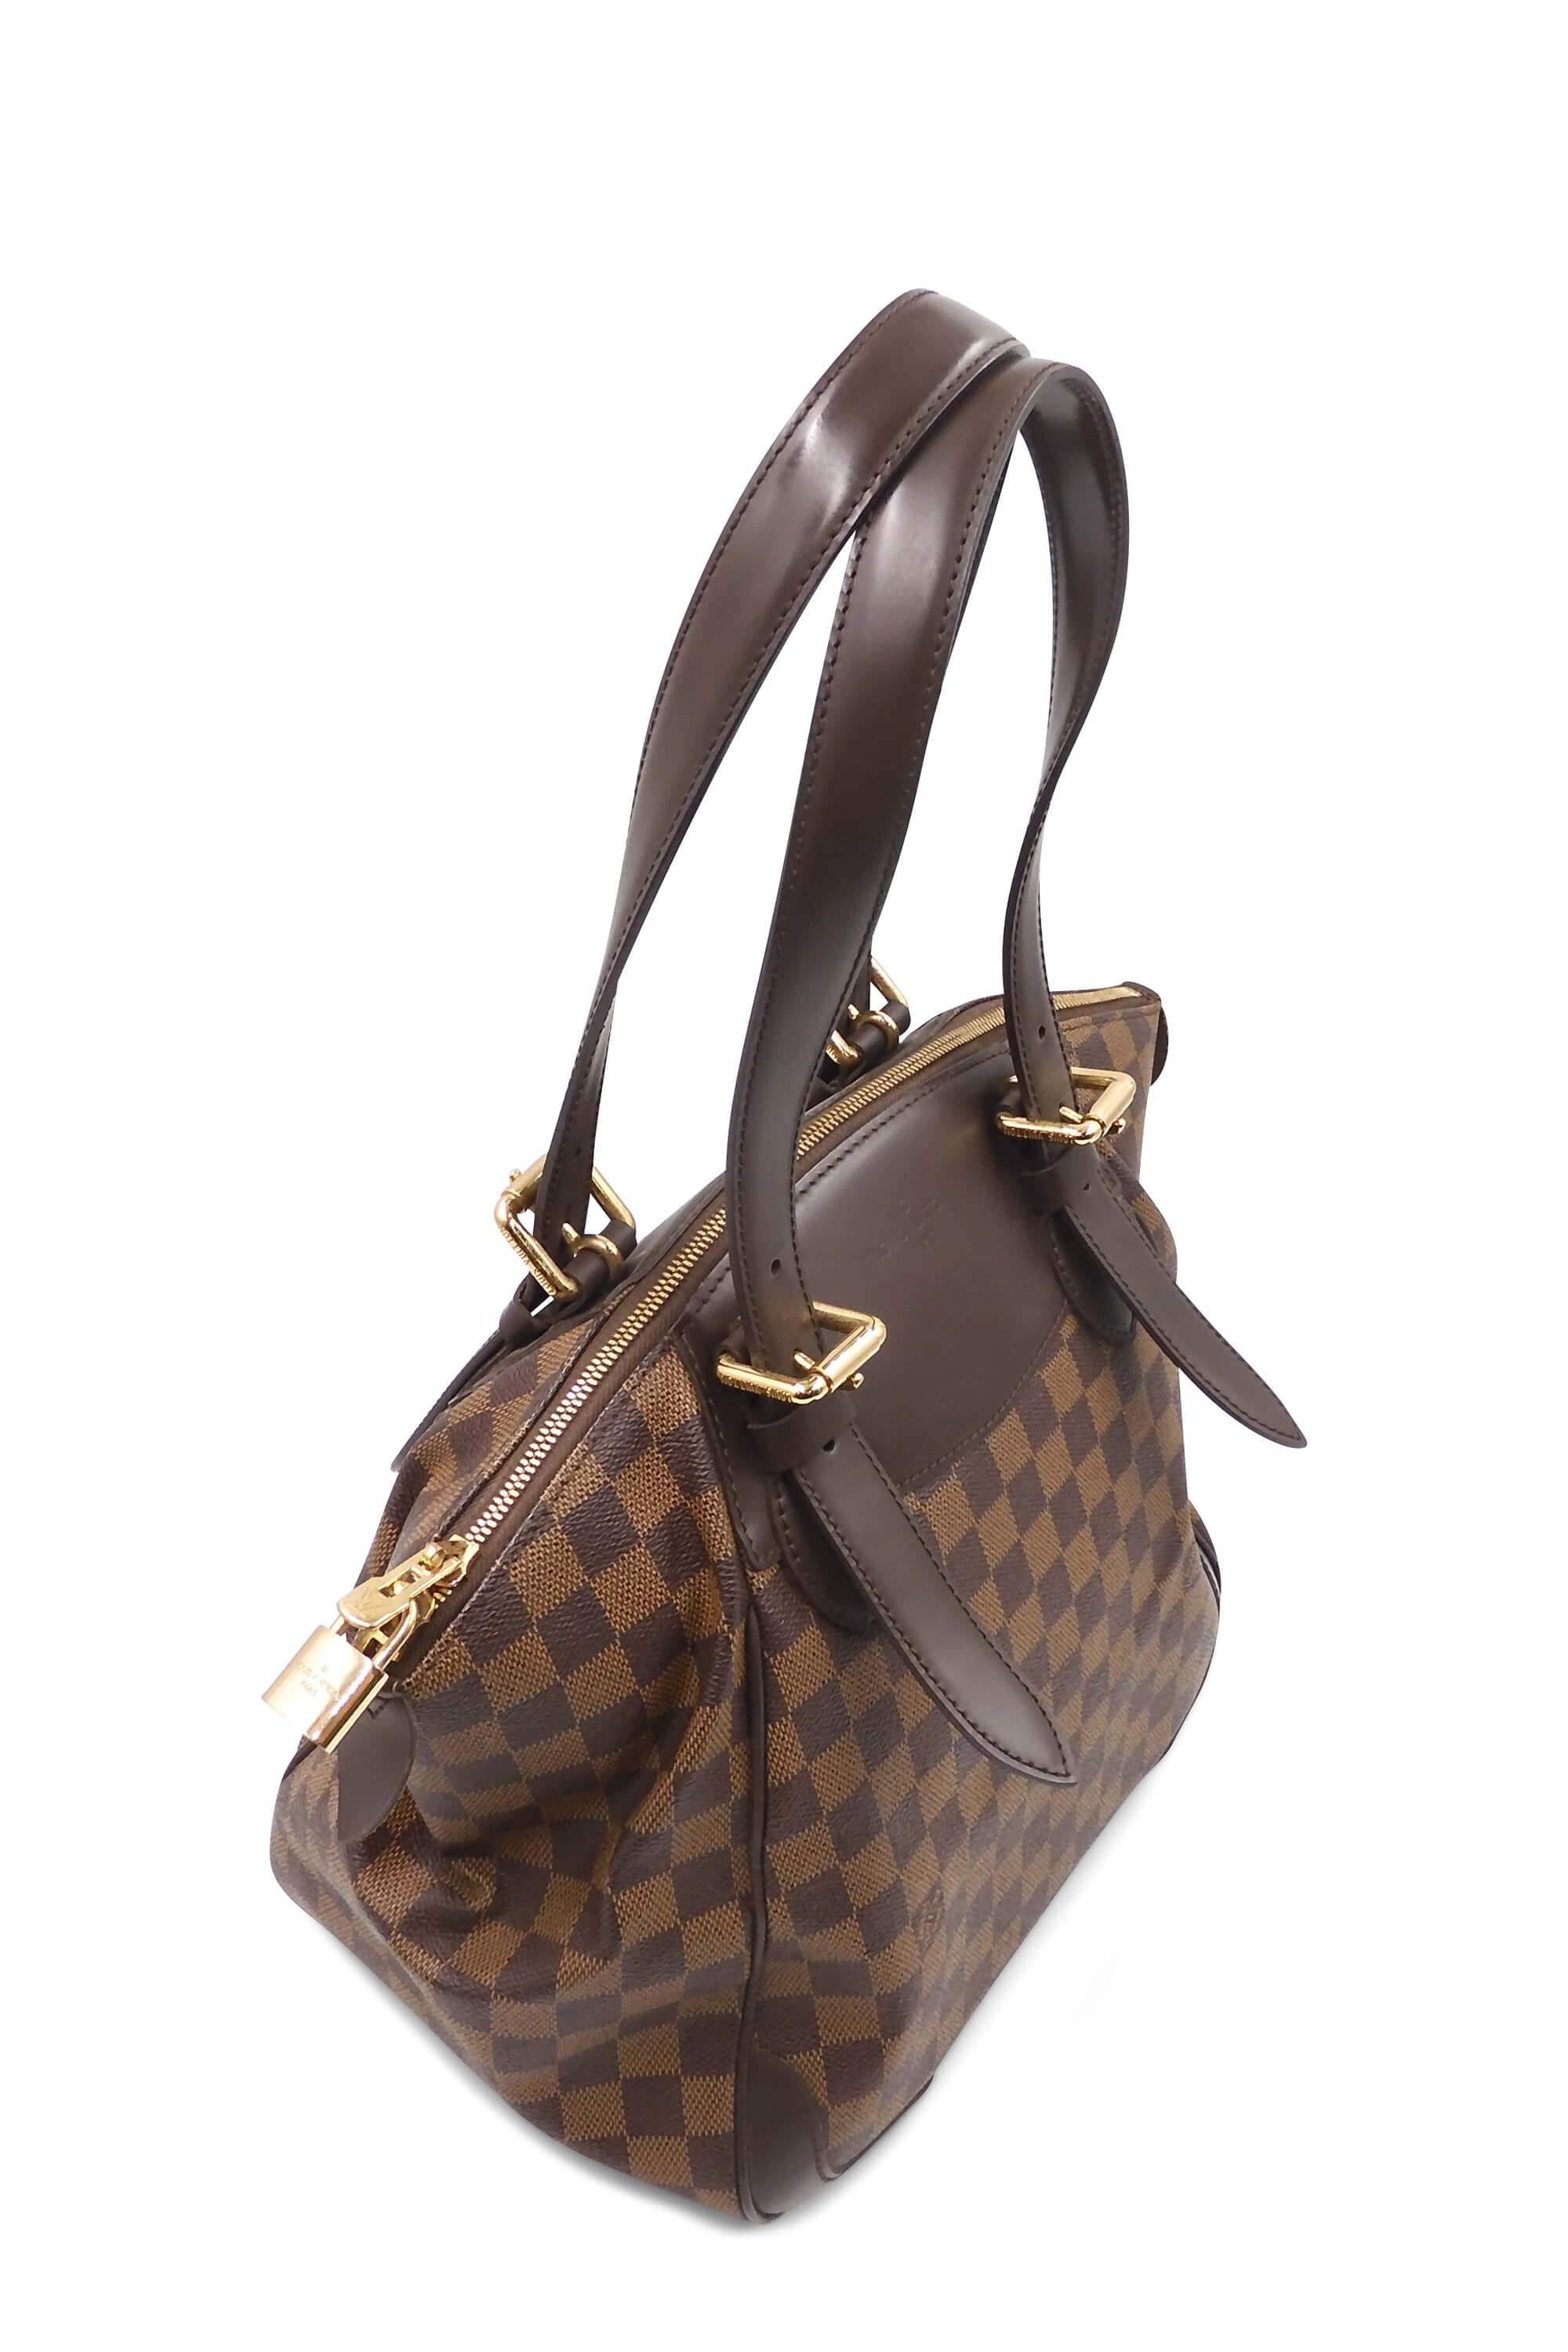 Louis Vuitton Damier Ebene Verona MM Shoulder Bag  I MISS YOU VINTAGE